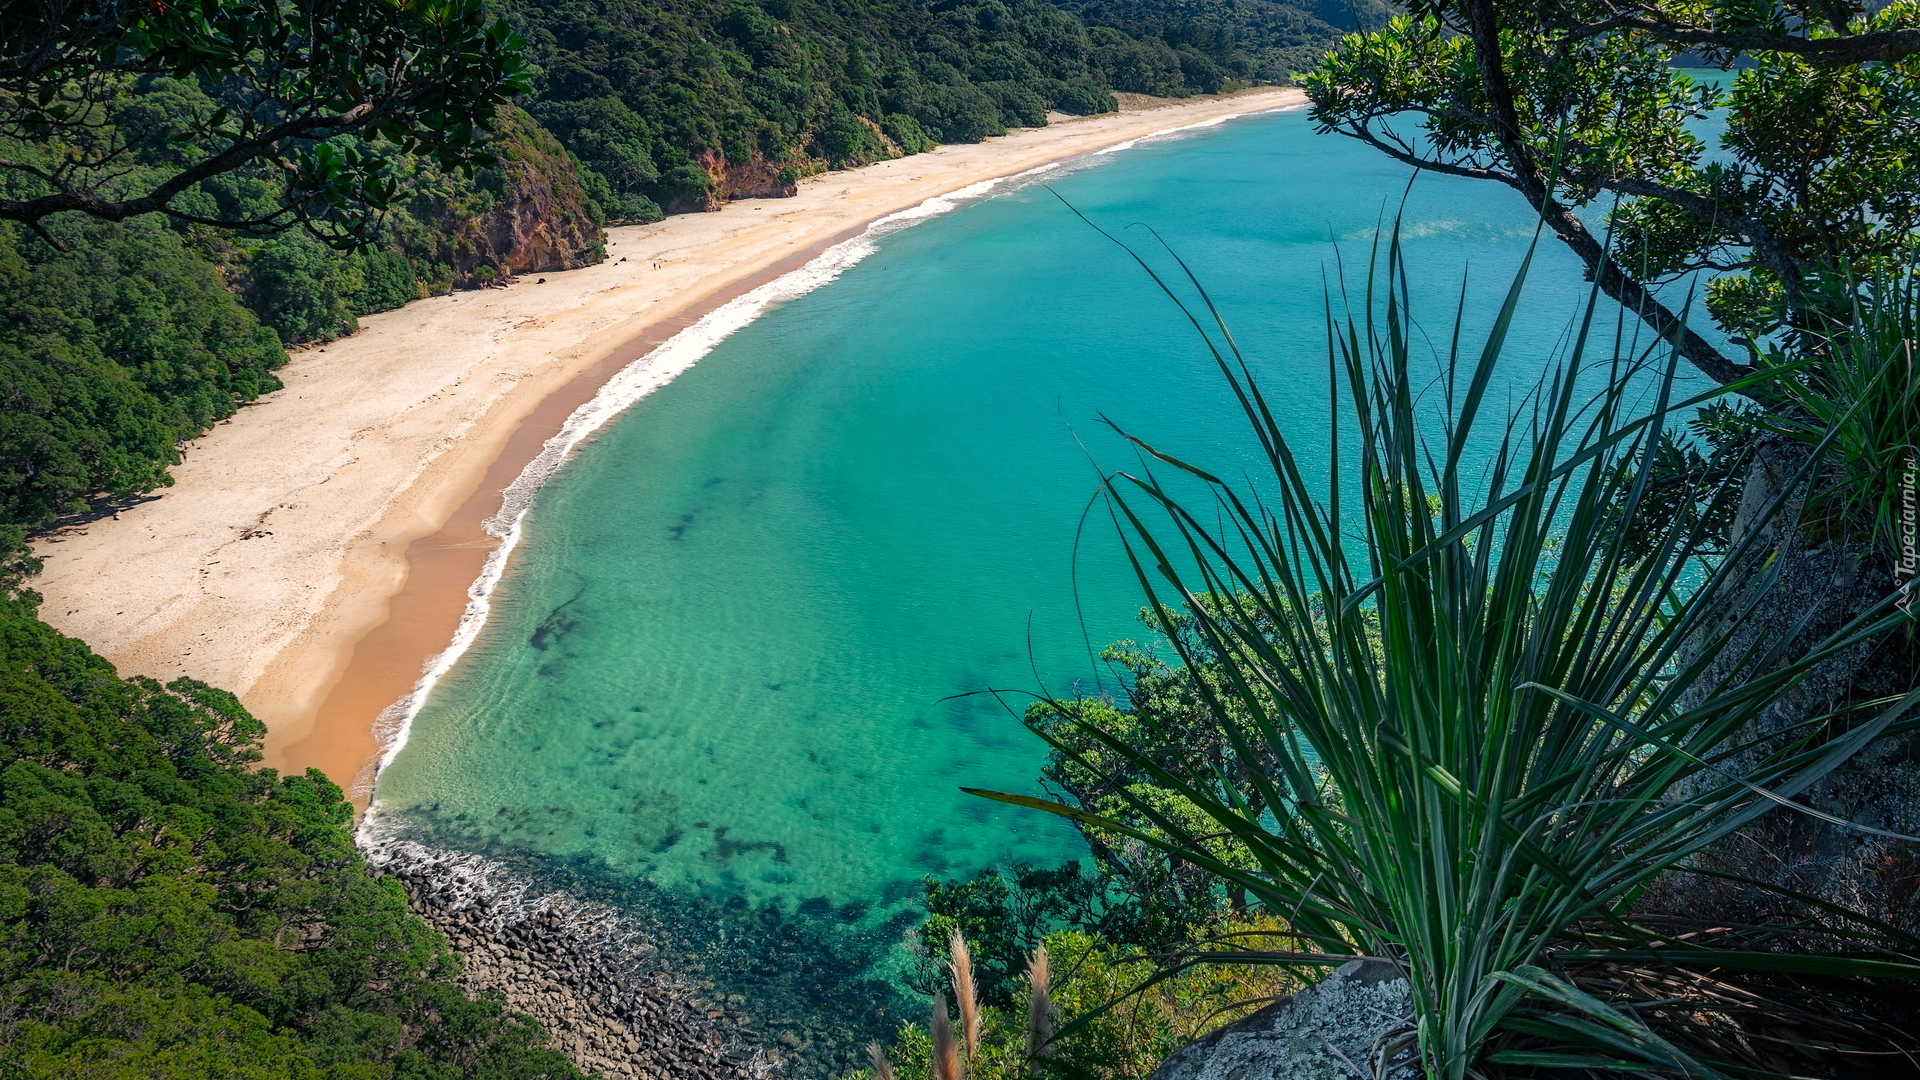 Plaża, New Chums Beach, Wybrzeże, Zatoka, Wainuiototo Bay, Rośliny, Whangapoua, Nowa Zelandia